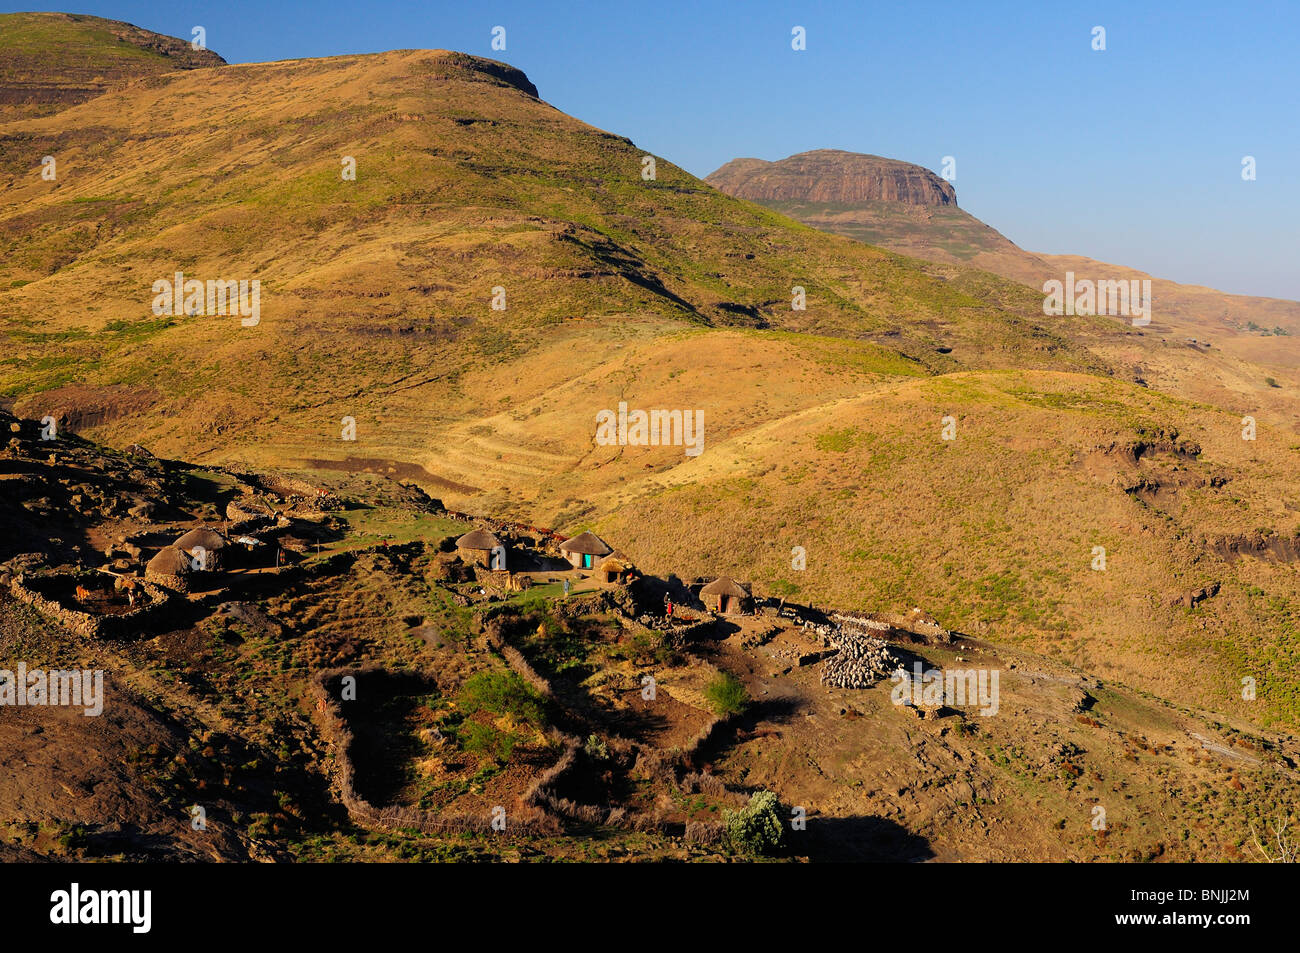 Peuple Basotho habitants locaux autochtones Native Village près de Ramabanta Lesotho Afrique du Sud chalets maisons paysage de règlement Banque D'Images